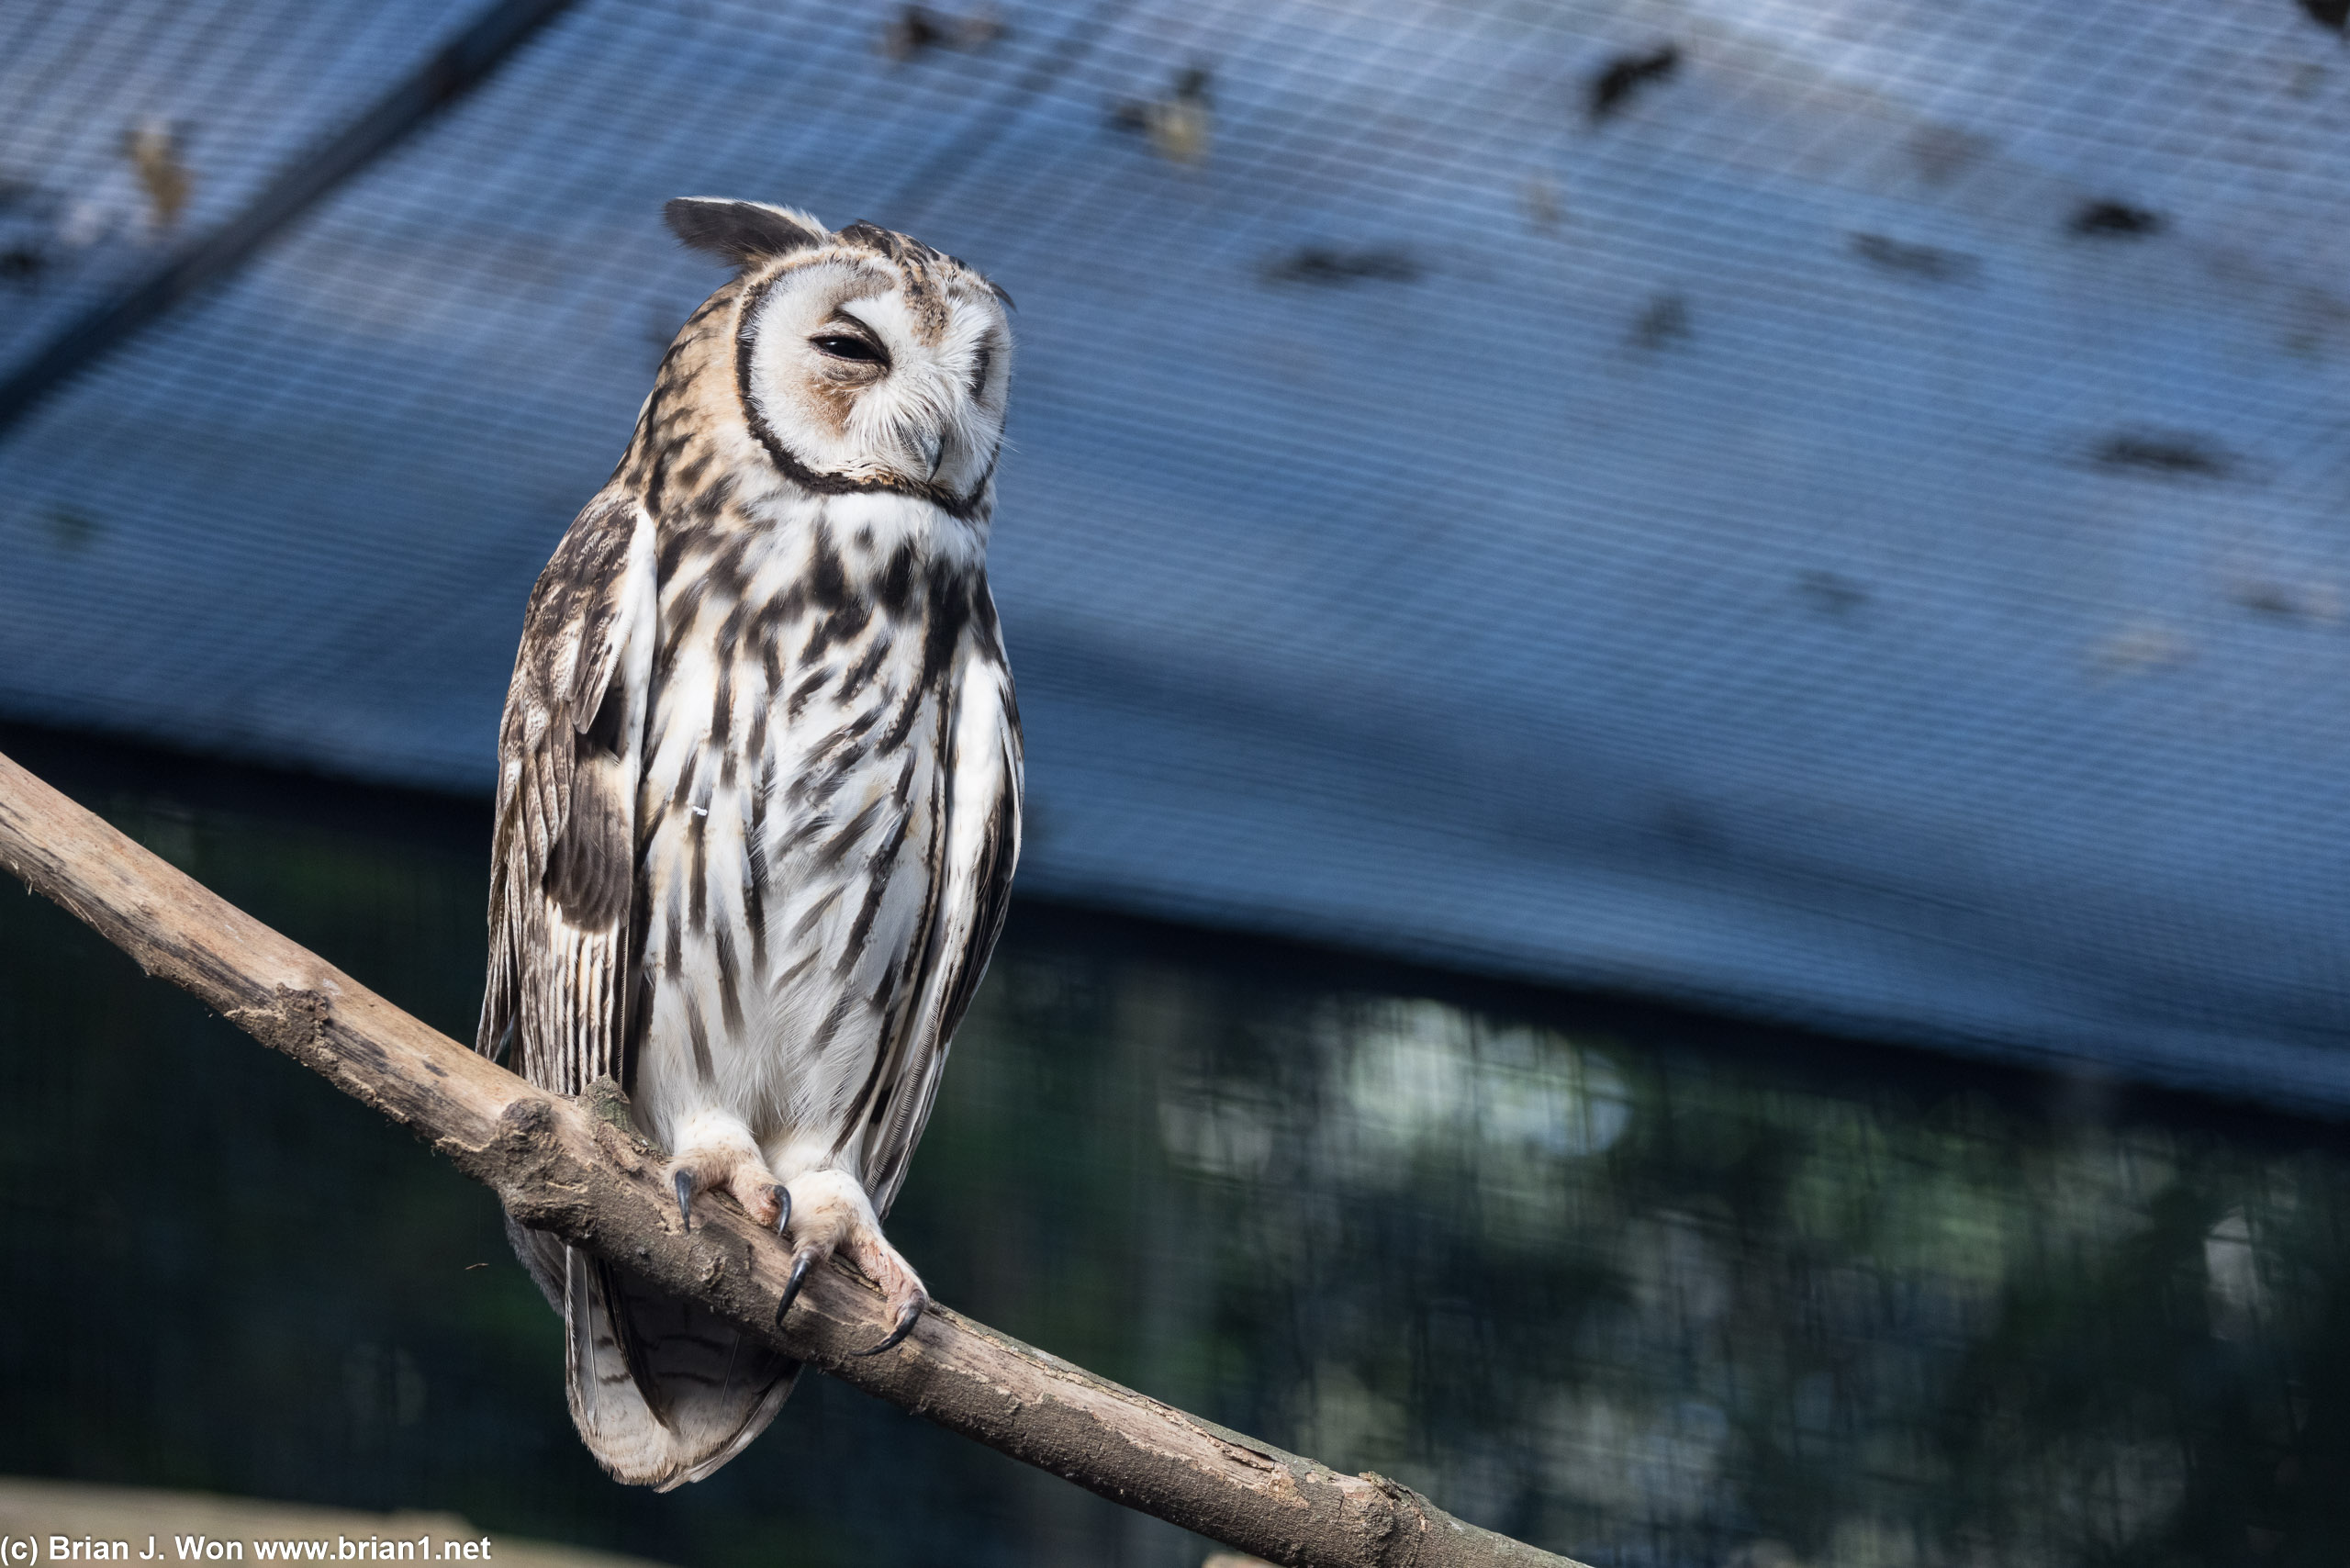 Striped owl.